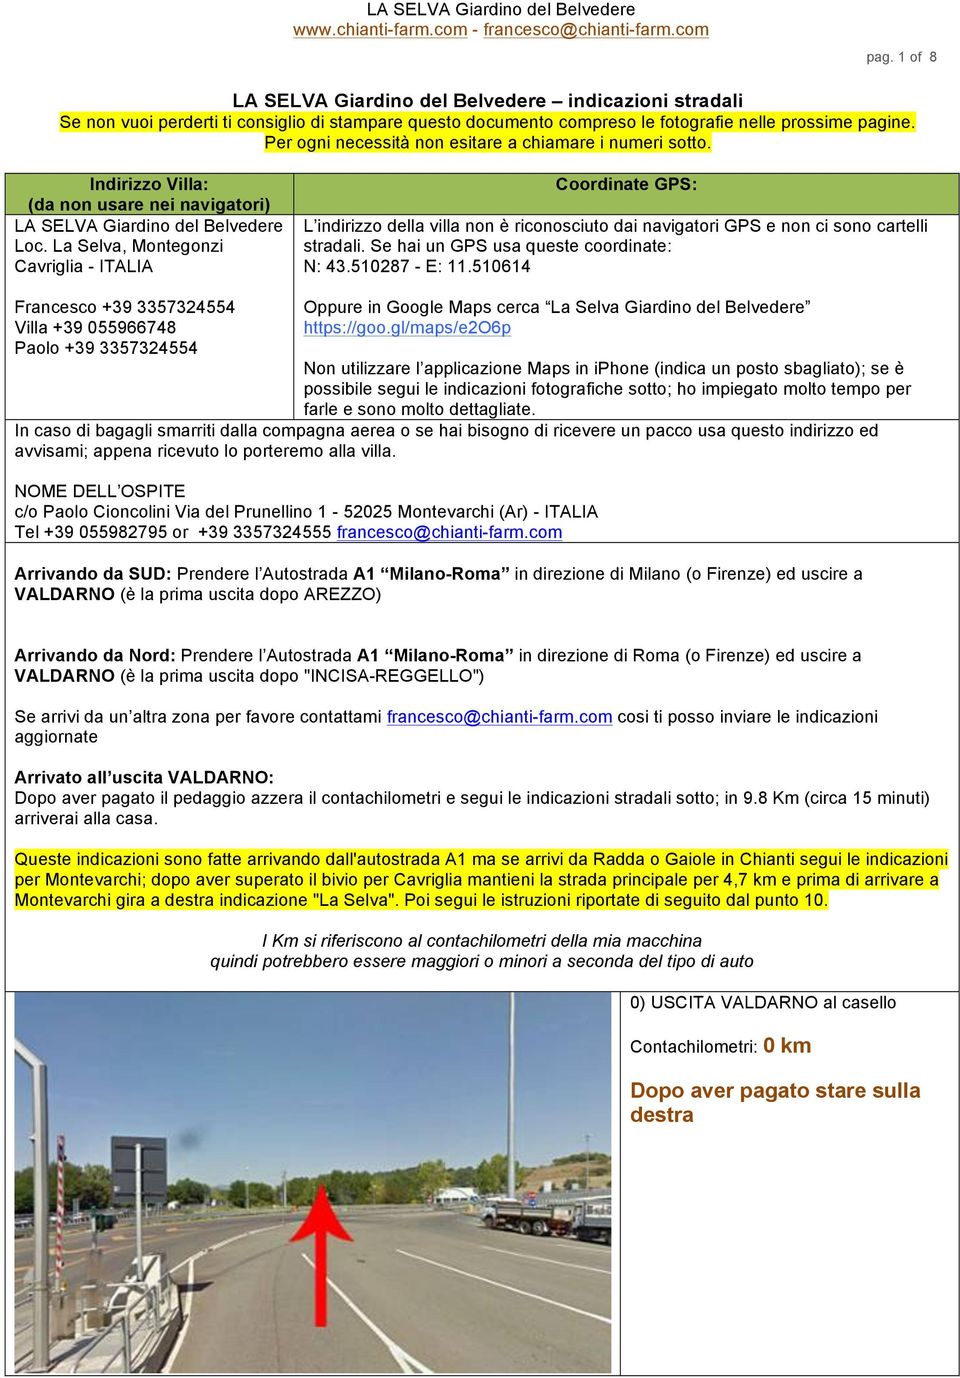 La Selva, Montegonzi Cavriglia - ITALIA Coordinate GPS: L indirizzo della villa non è riconosciuto dai navigatori GPS e non ci sono cartelli stradali. Se hai un GPS usa queste coordinate: N: 43.